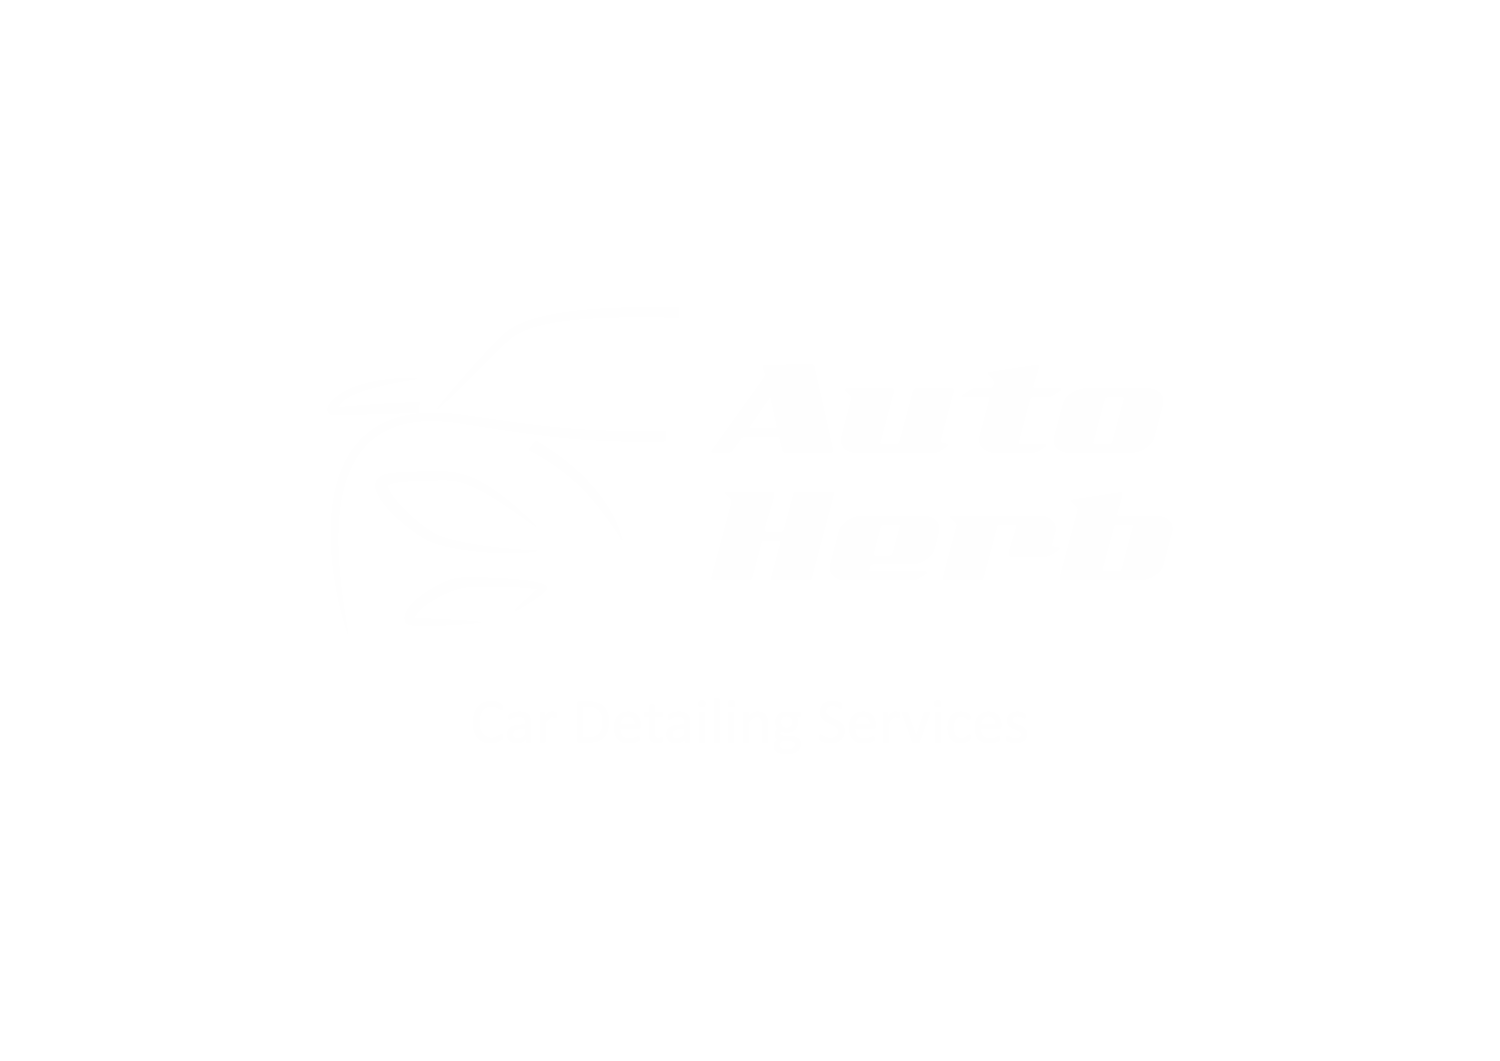 autoherb-white-logo